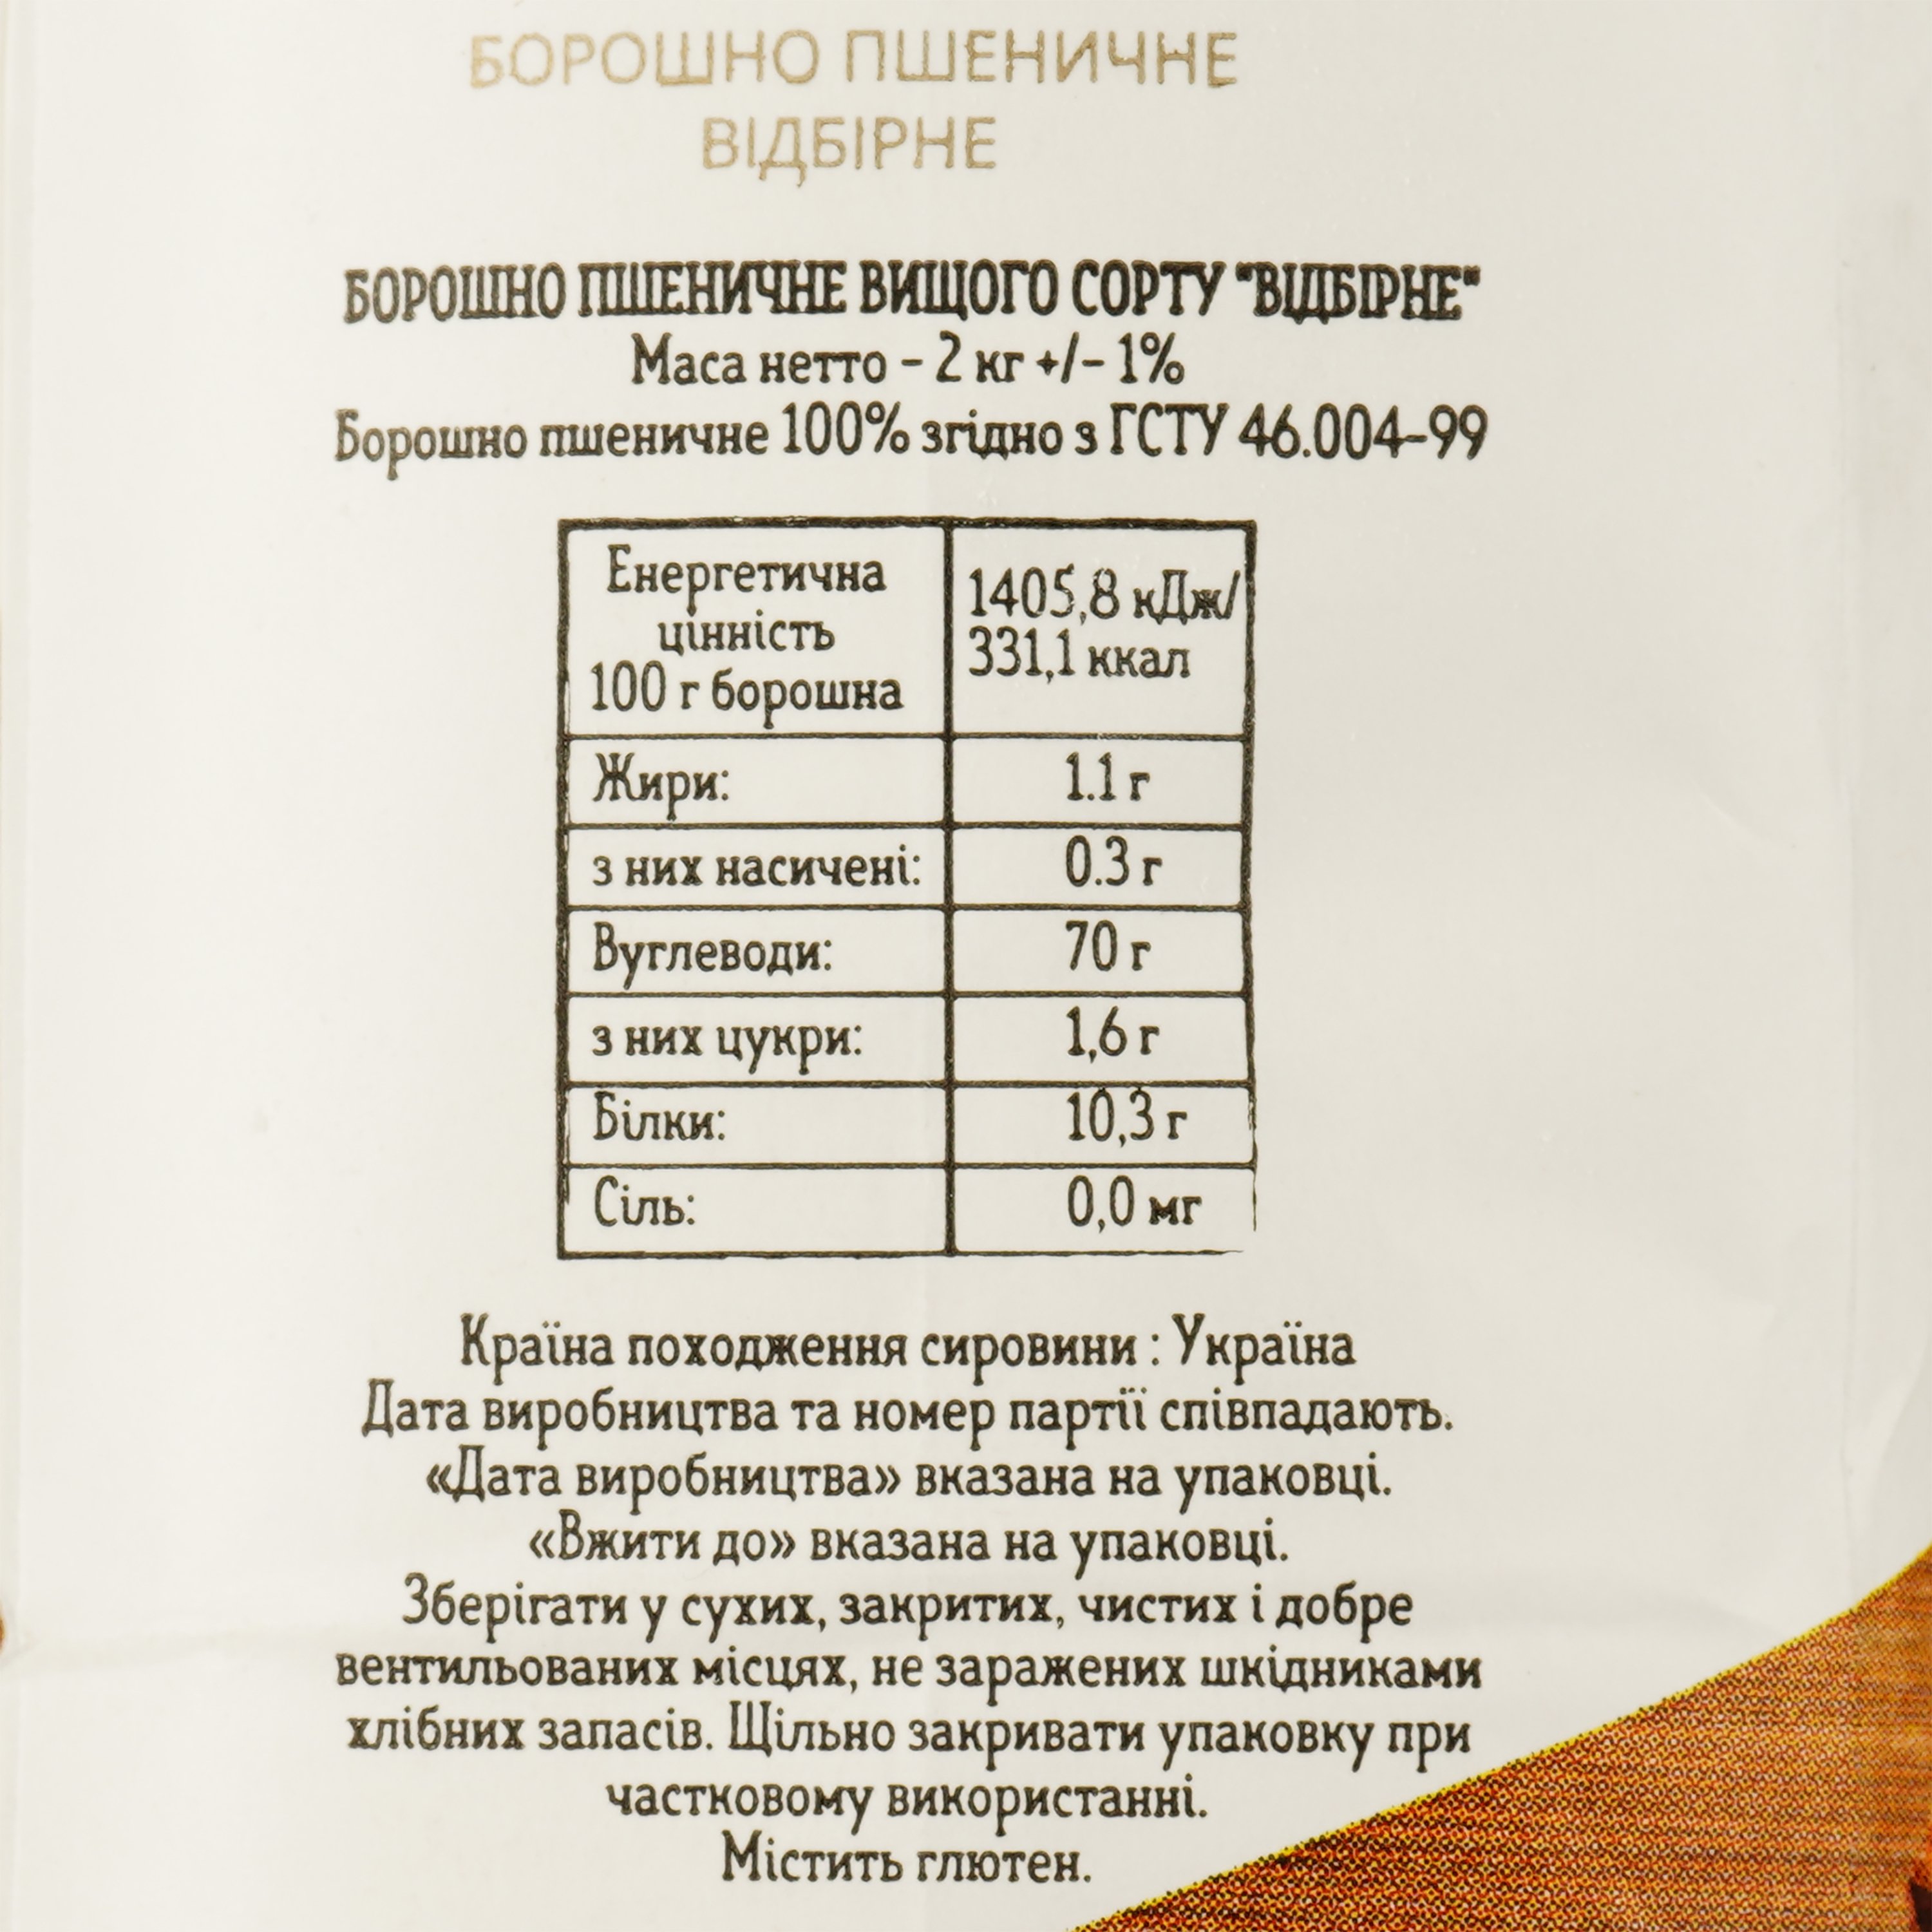 Борошно пшеничне Zernari Select відбірне 2 кг (772092) - фото 4